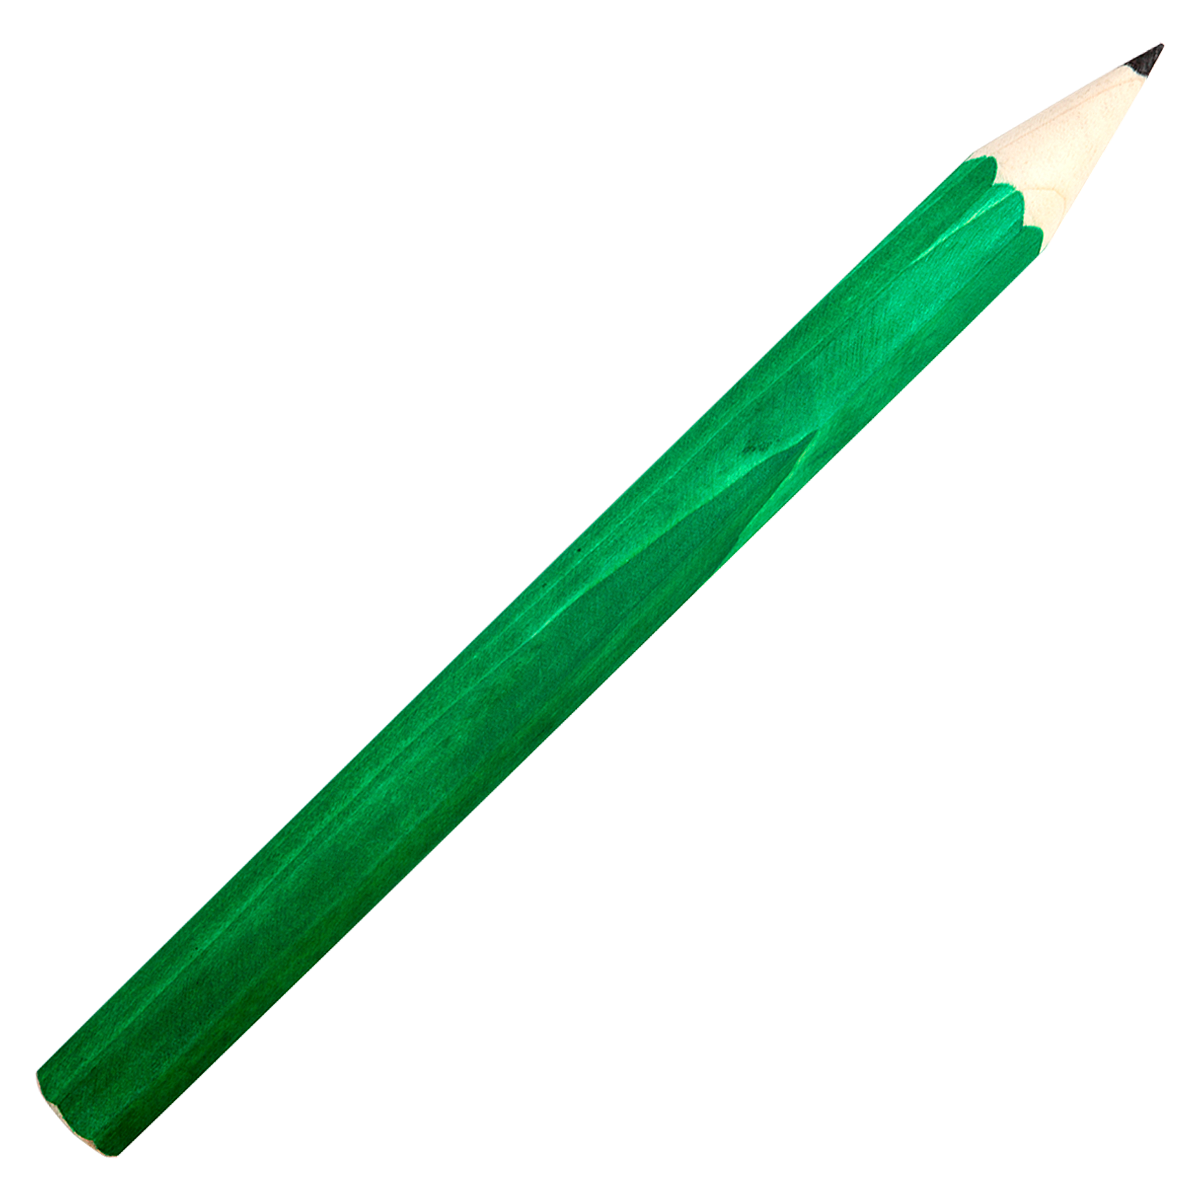 Купить зеленый карандаш. Зеленый карандаш. Салатовый карандаш. Зеленый карандаш для рисования. Цветные карандаши зеленые.